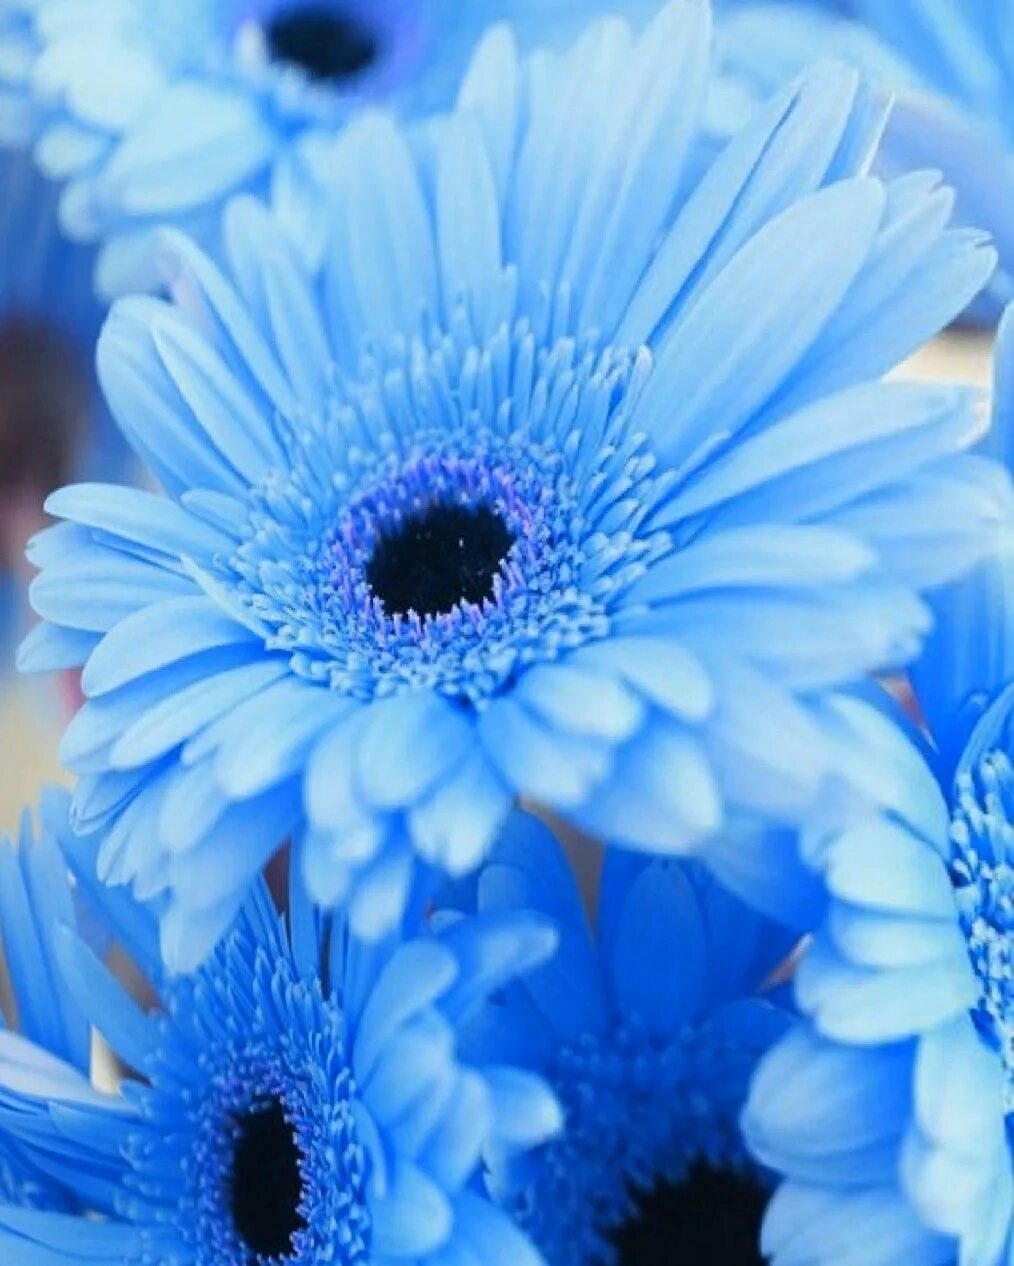 Выполнен в голубом цвете голубой. Голубые цветы. Голубой цвет. Цветы голубого цвета. Цветы синего и голубого цвета.